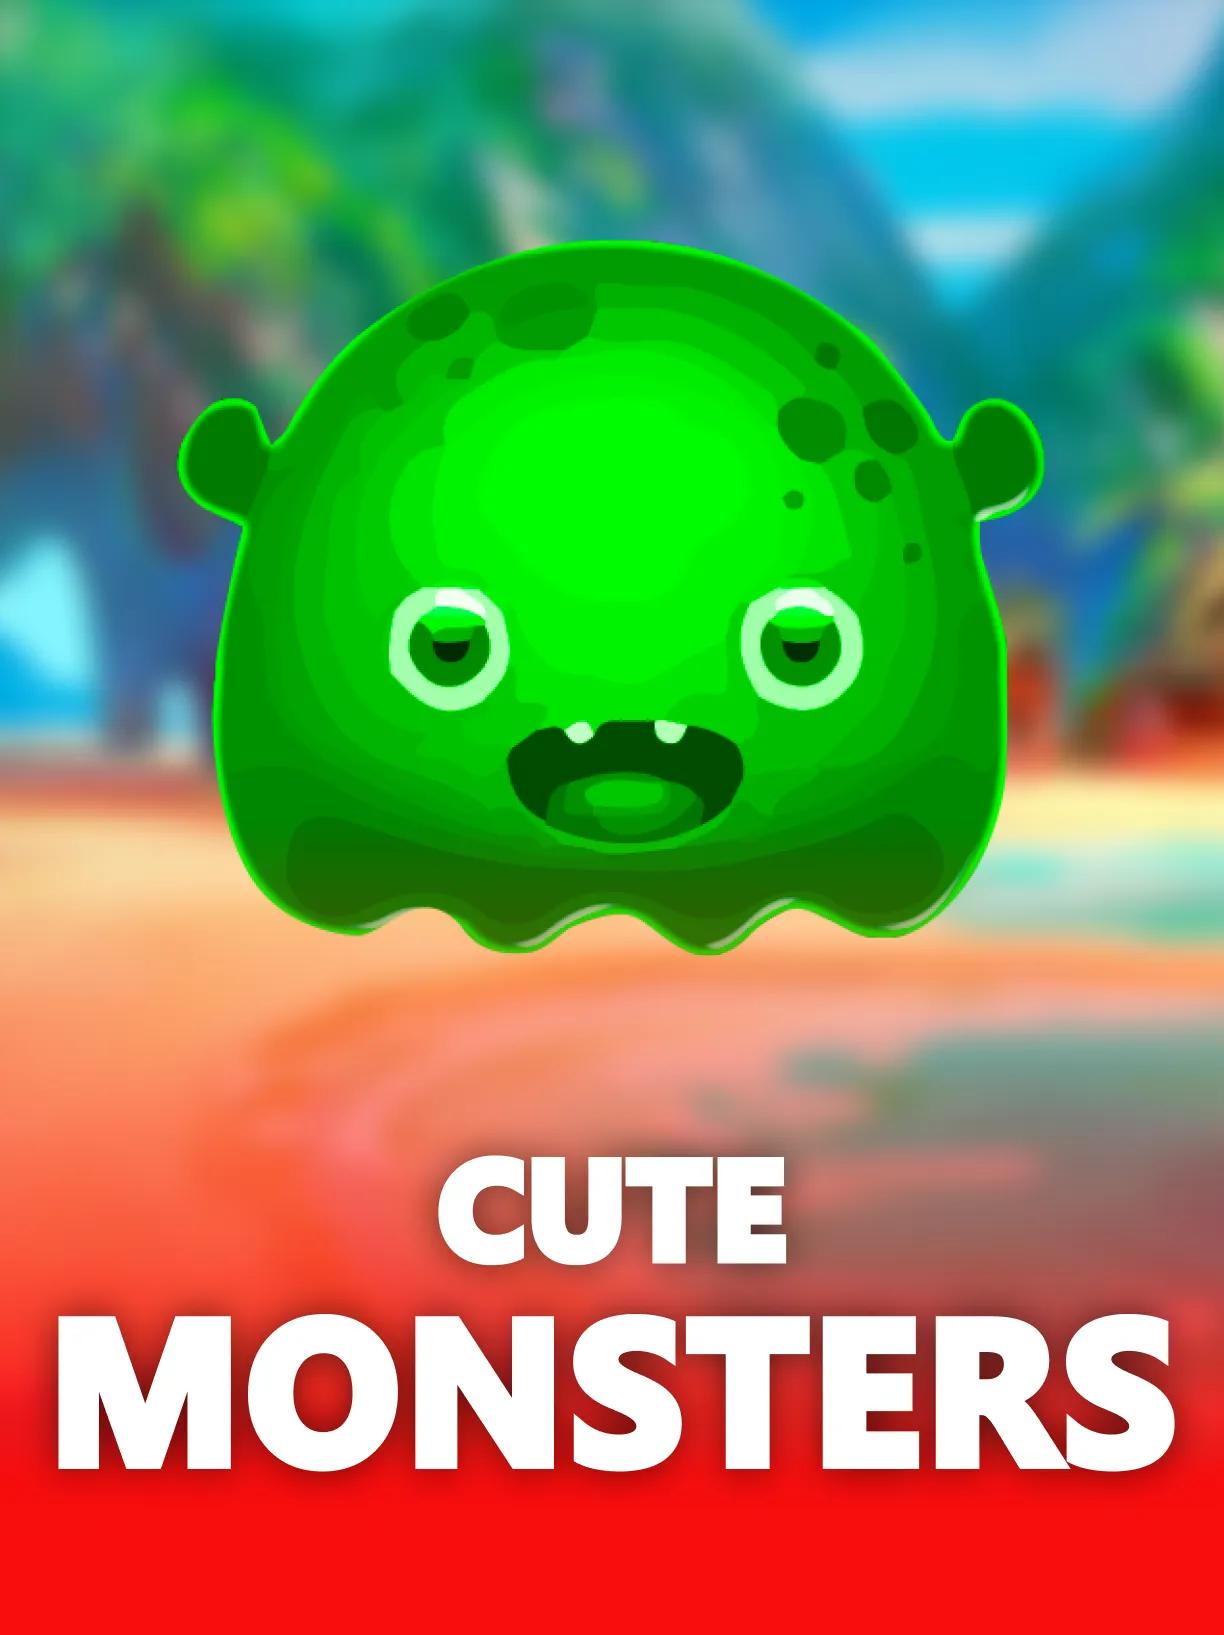 ug_Cute_Monsters_square.webp